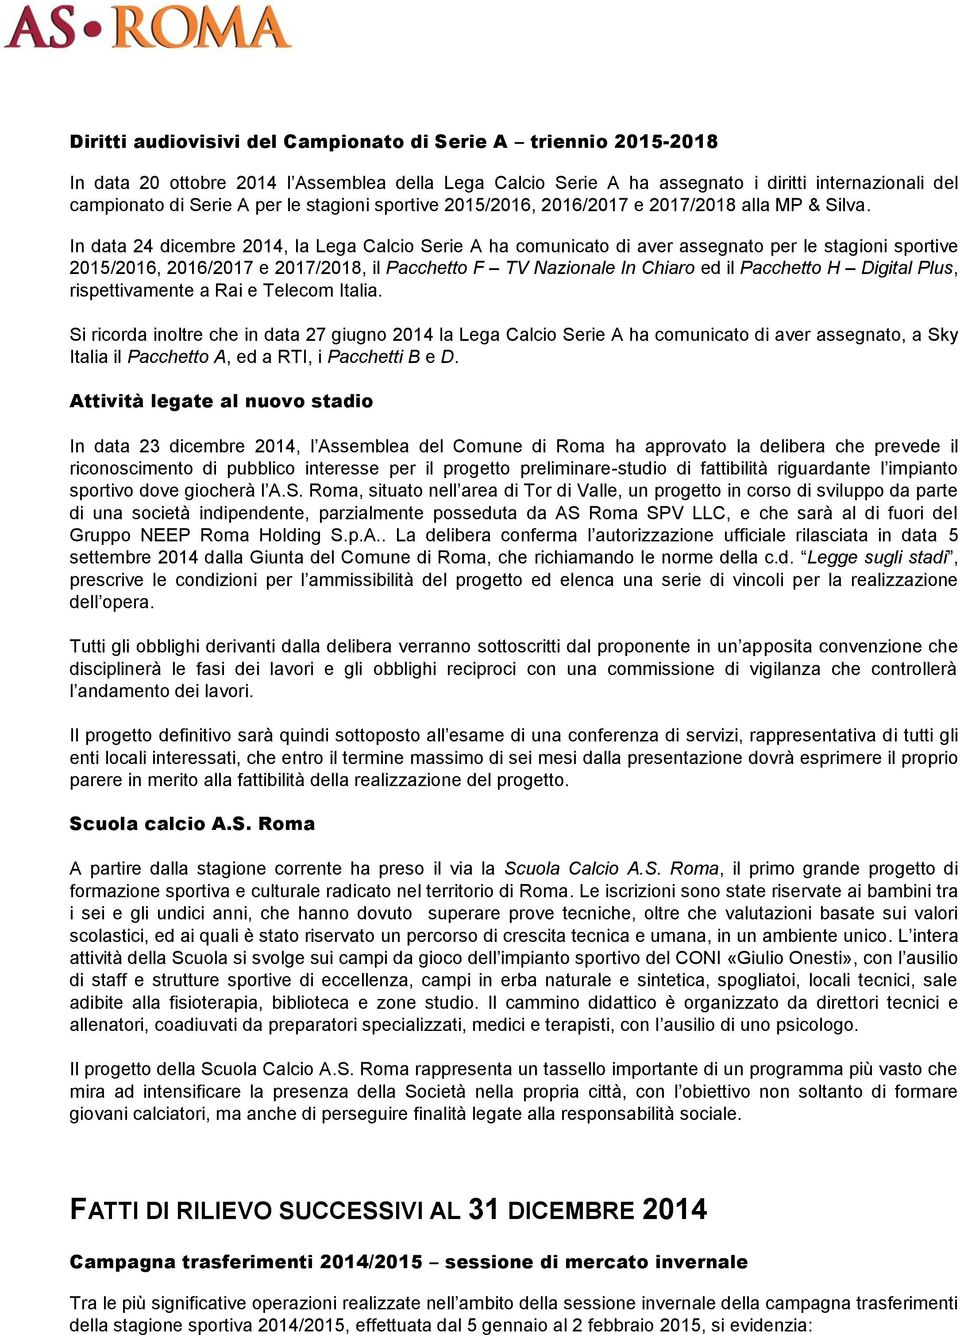 In data 24 dicembre 2014, la Lega Calcio Serie A ha comunicato di aver assegnato per le stagioni sportive 2015/2016, 2016/2017 e 2017/2018, il Pacchetto F TV Nazionale In Chiaro ed il Pacchetto H